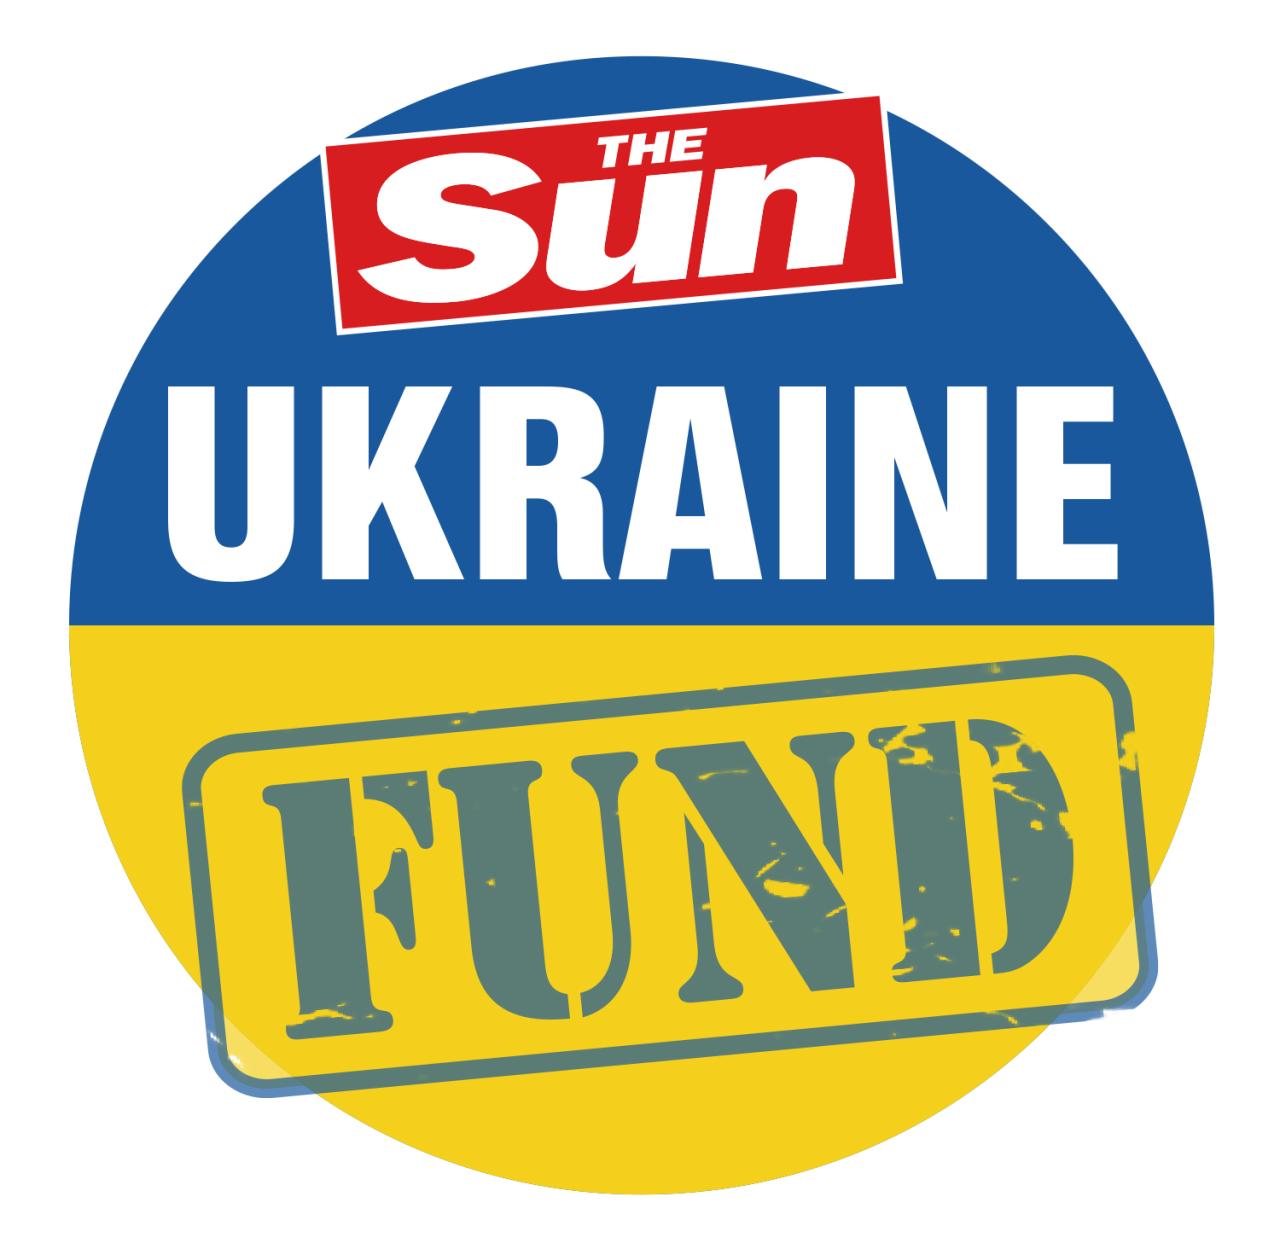 El dinero del propietario de The Sun, News UK, se suma a las donaciones de ustedes, nuestros lectores de gran corazón.